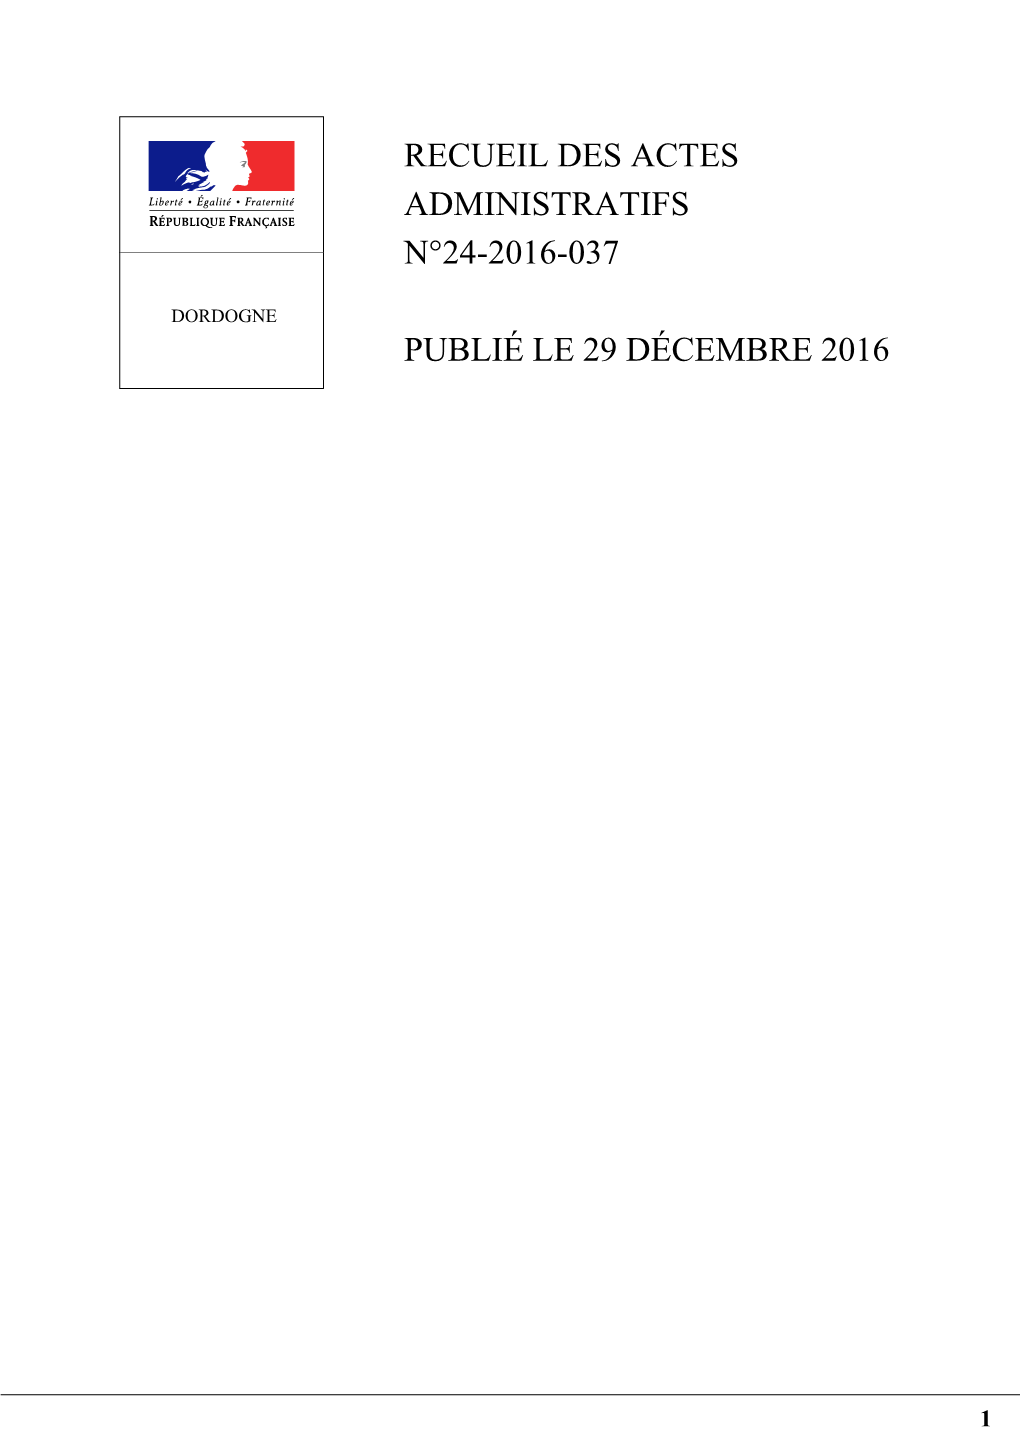 Recueil Des Actes Administratifs N°24-2016-037 Publié Le 29 Décembre 2016